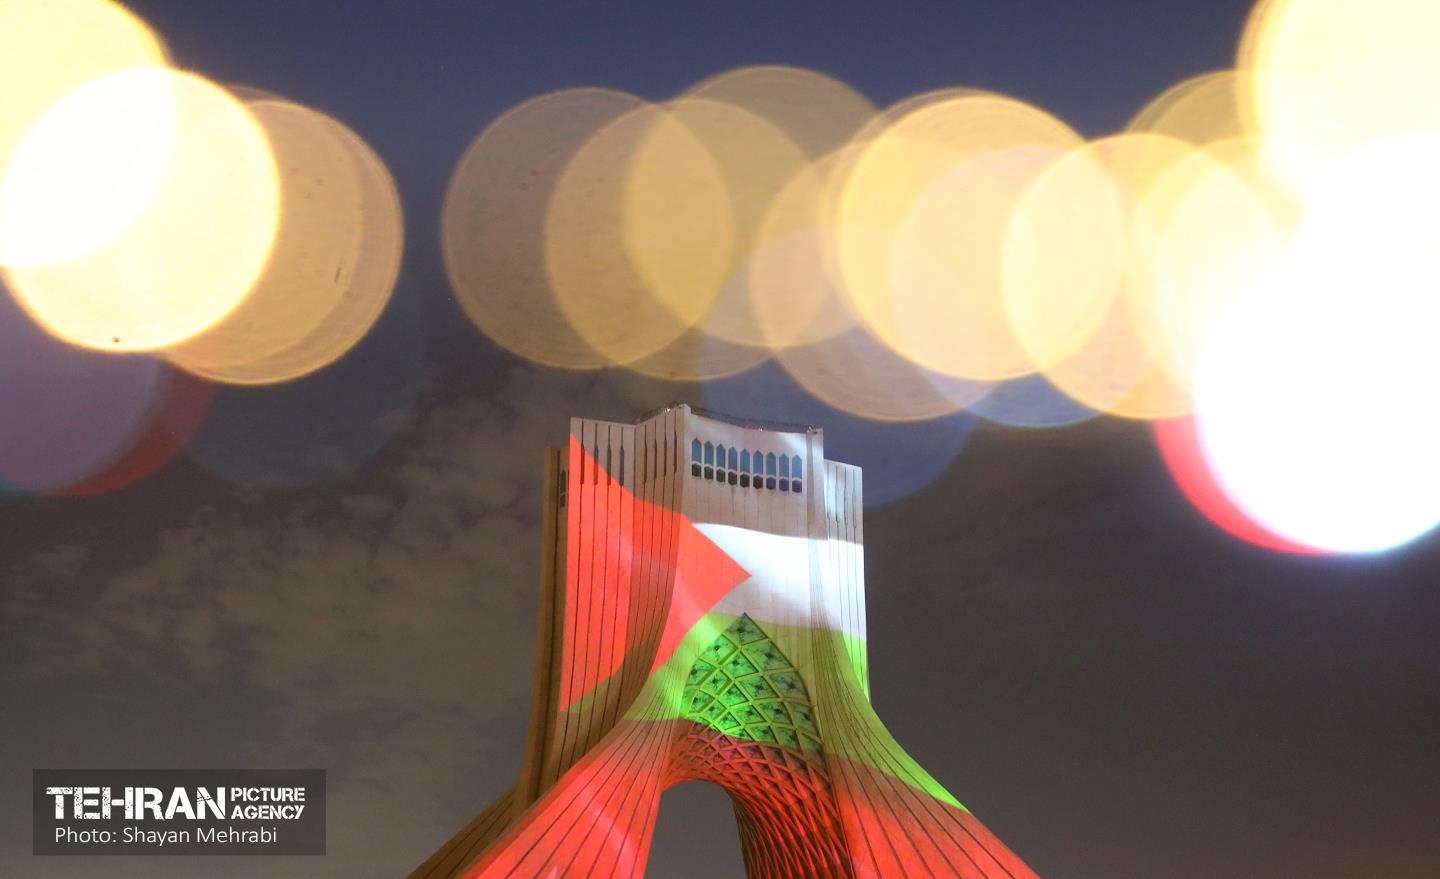 اجرای نورپردازی سه بعدی همزمان با عملیات غرورآفرین "طوفان الاقصی" در برج آزادی تهران